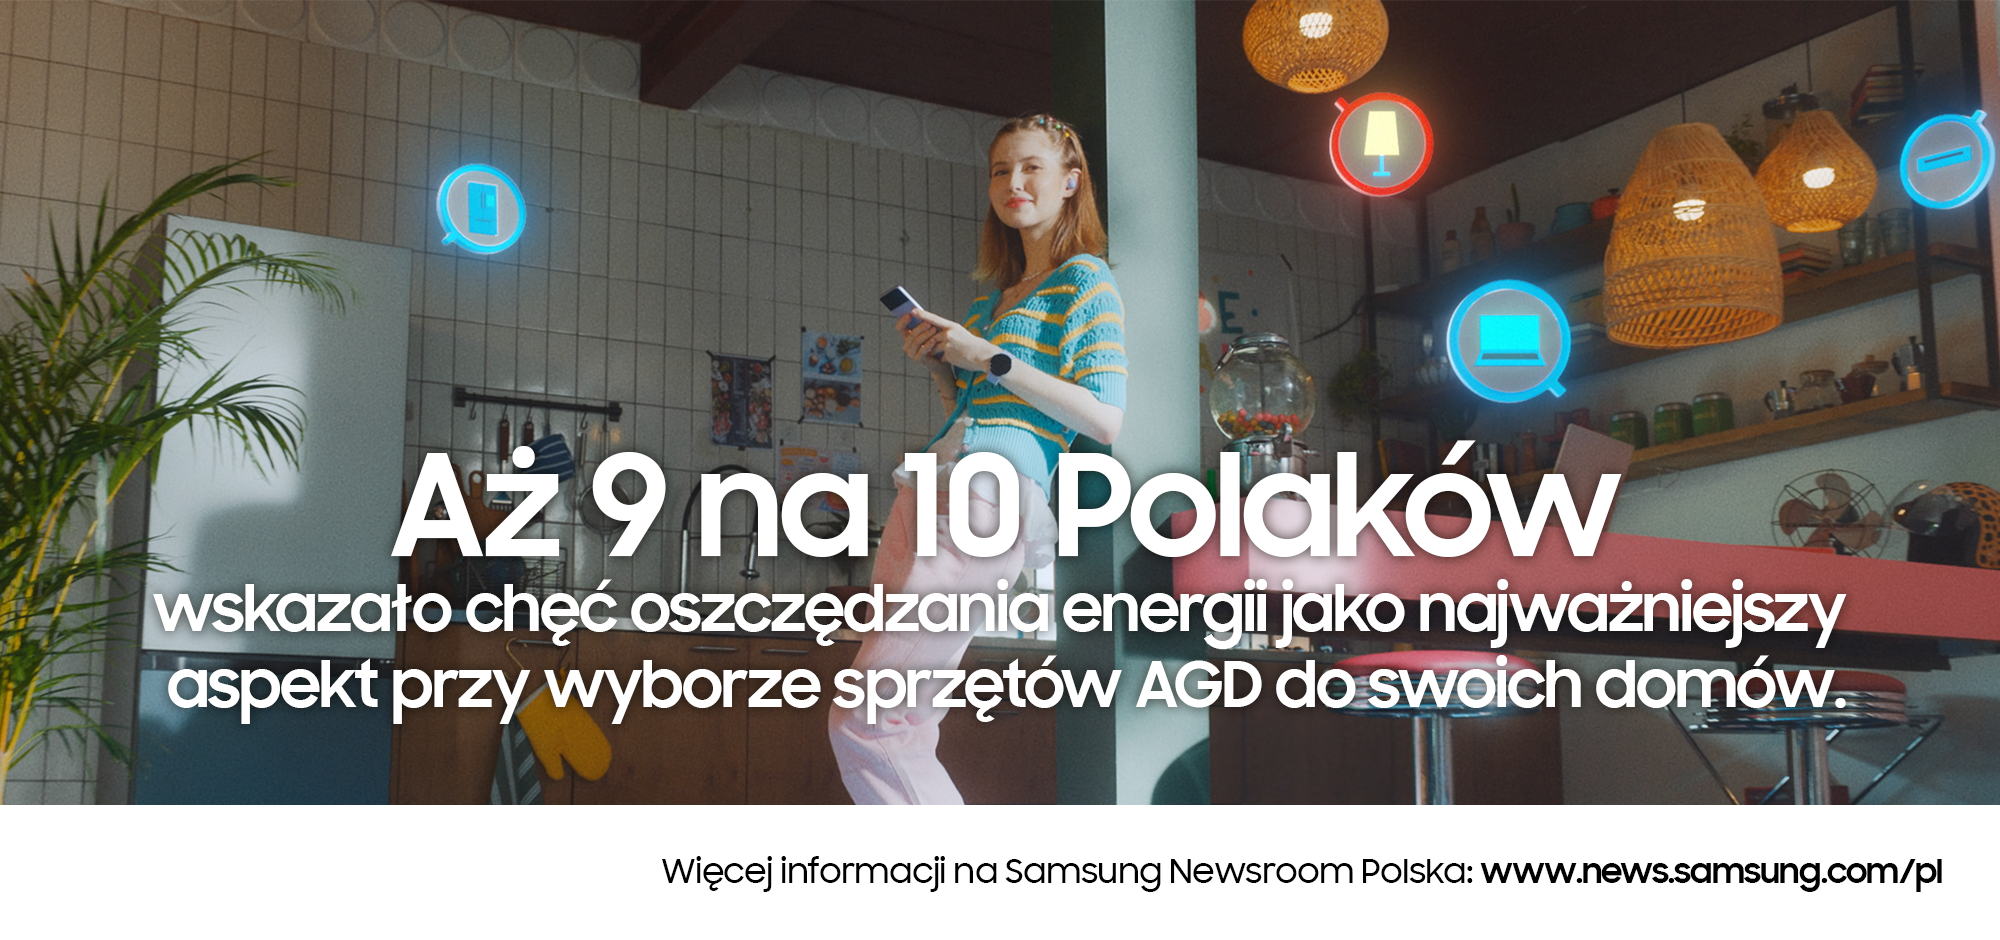 Polki i Polacy chcą oszczędzać energię w domu w sposób „smart”